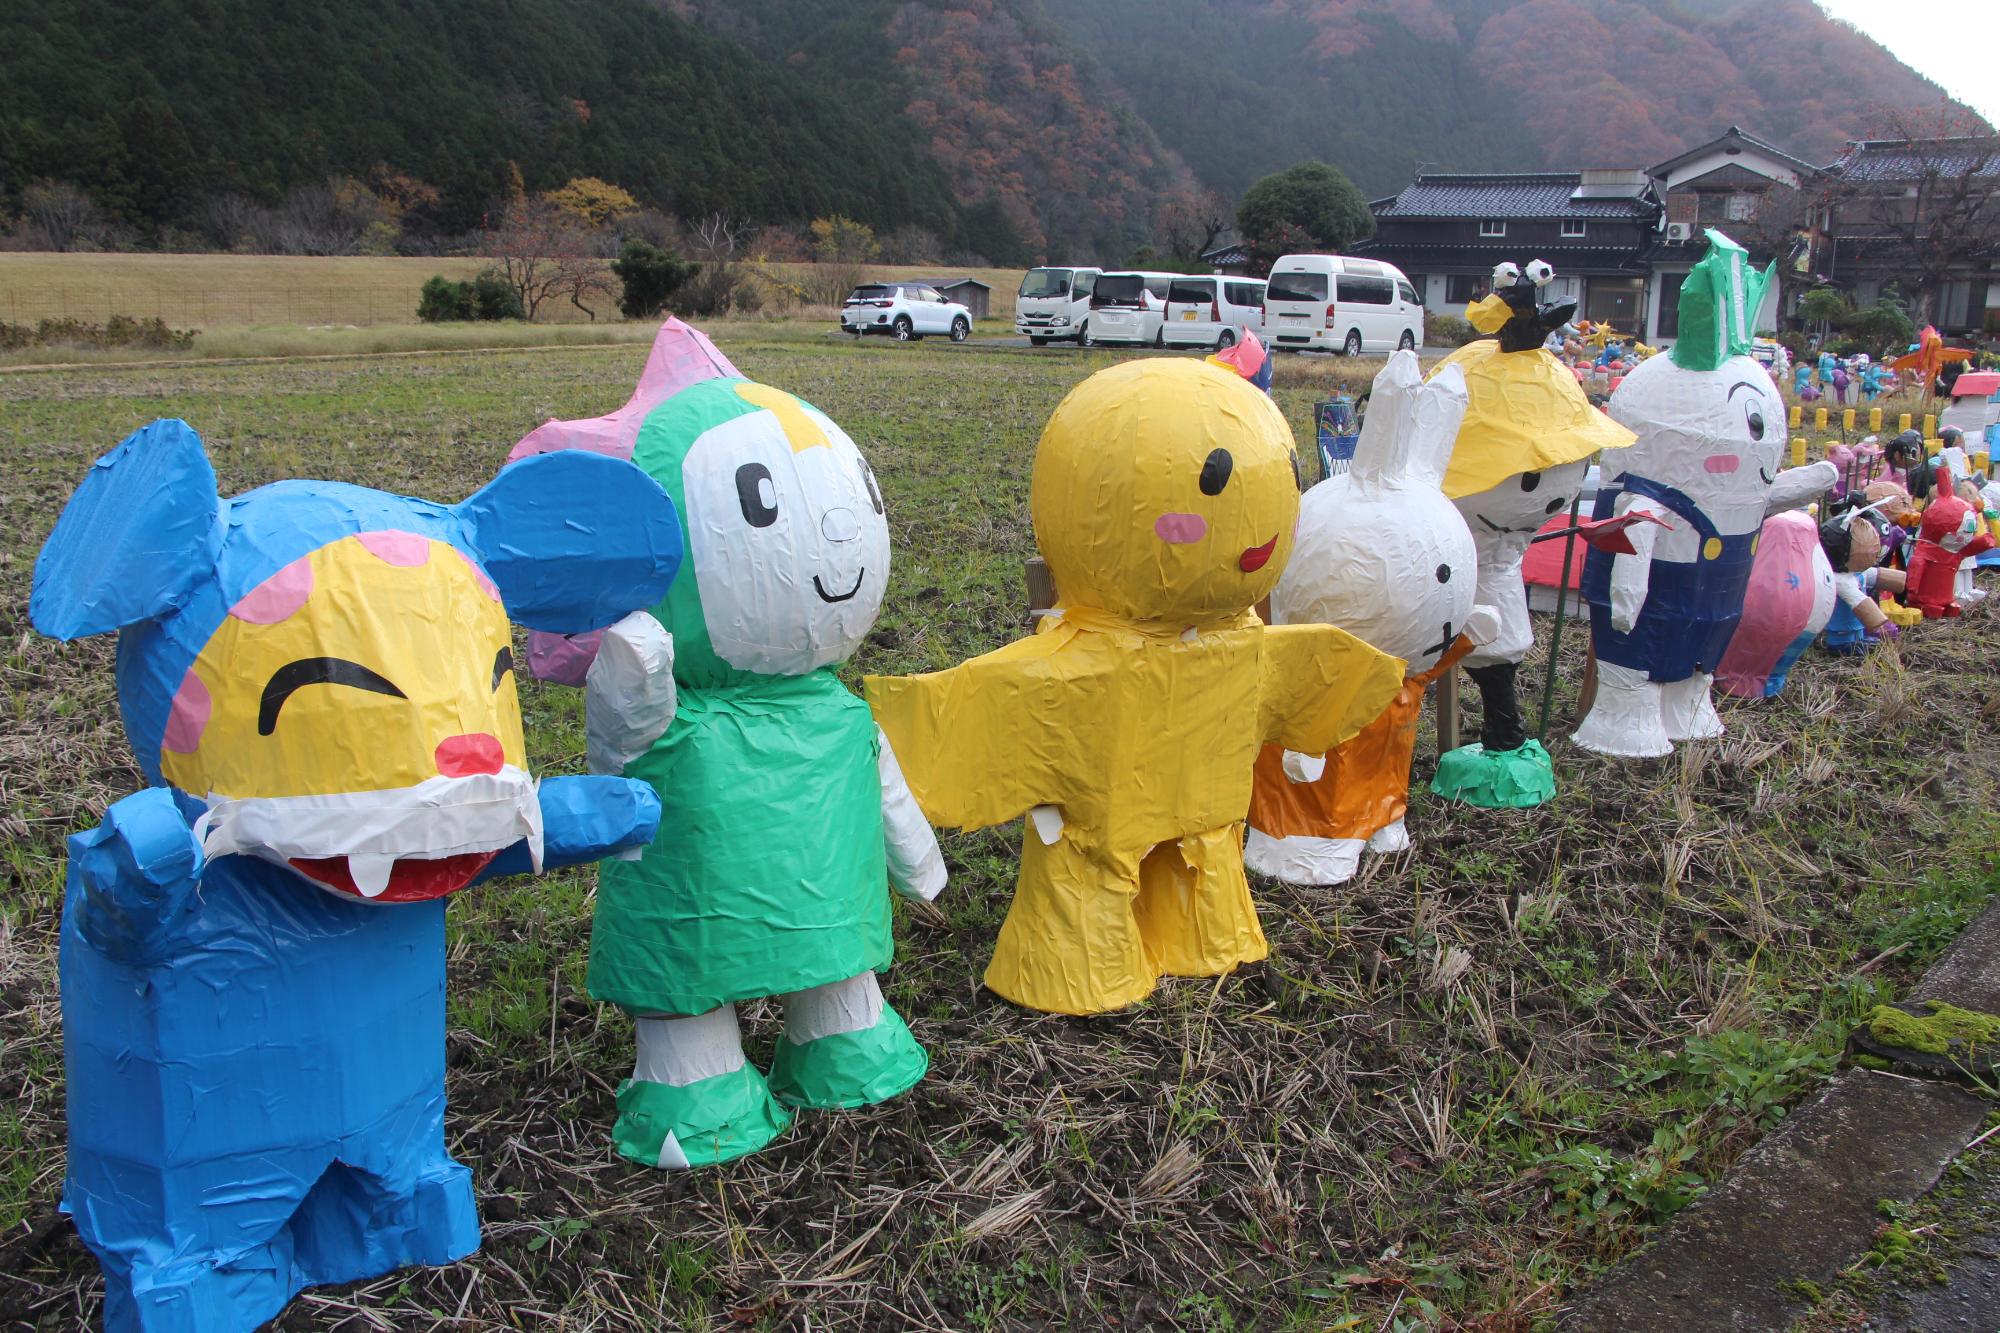 アニメのキャラクターなどをモチーフにしたかかしが田んぼのあぜに沿って並んでいる写真